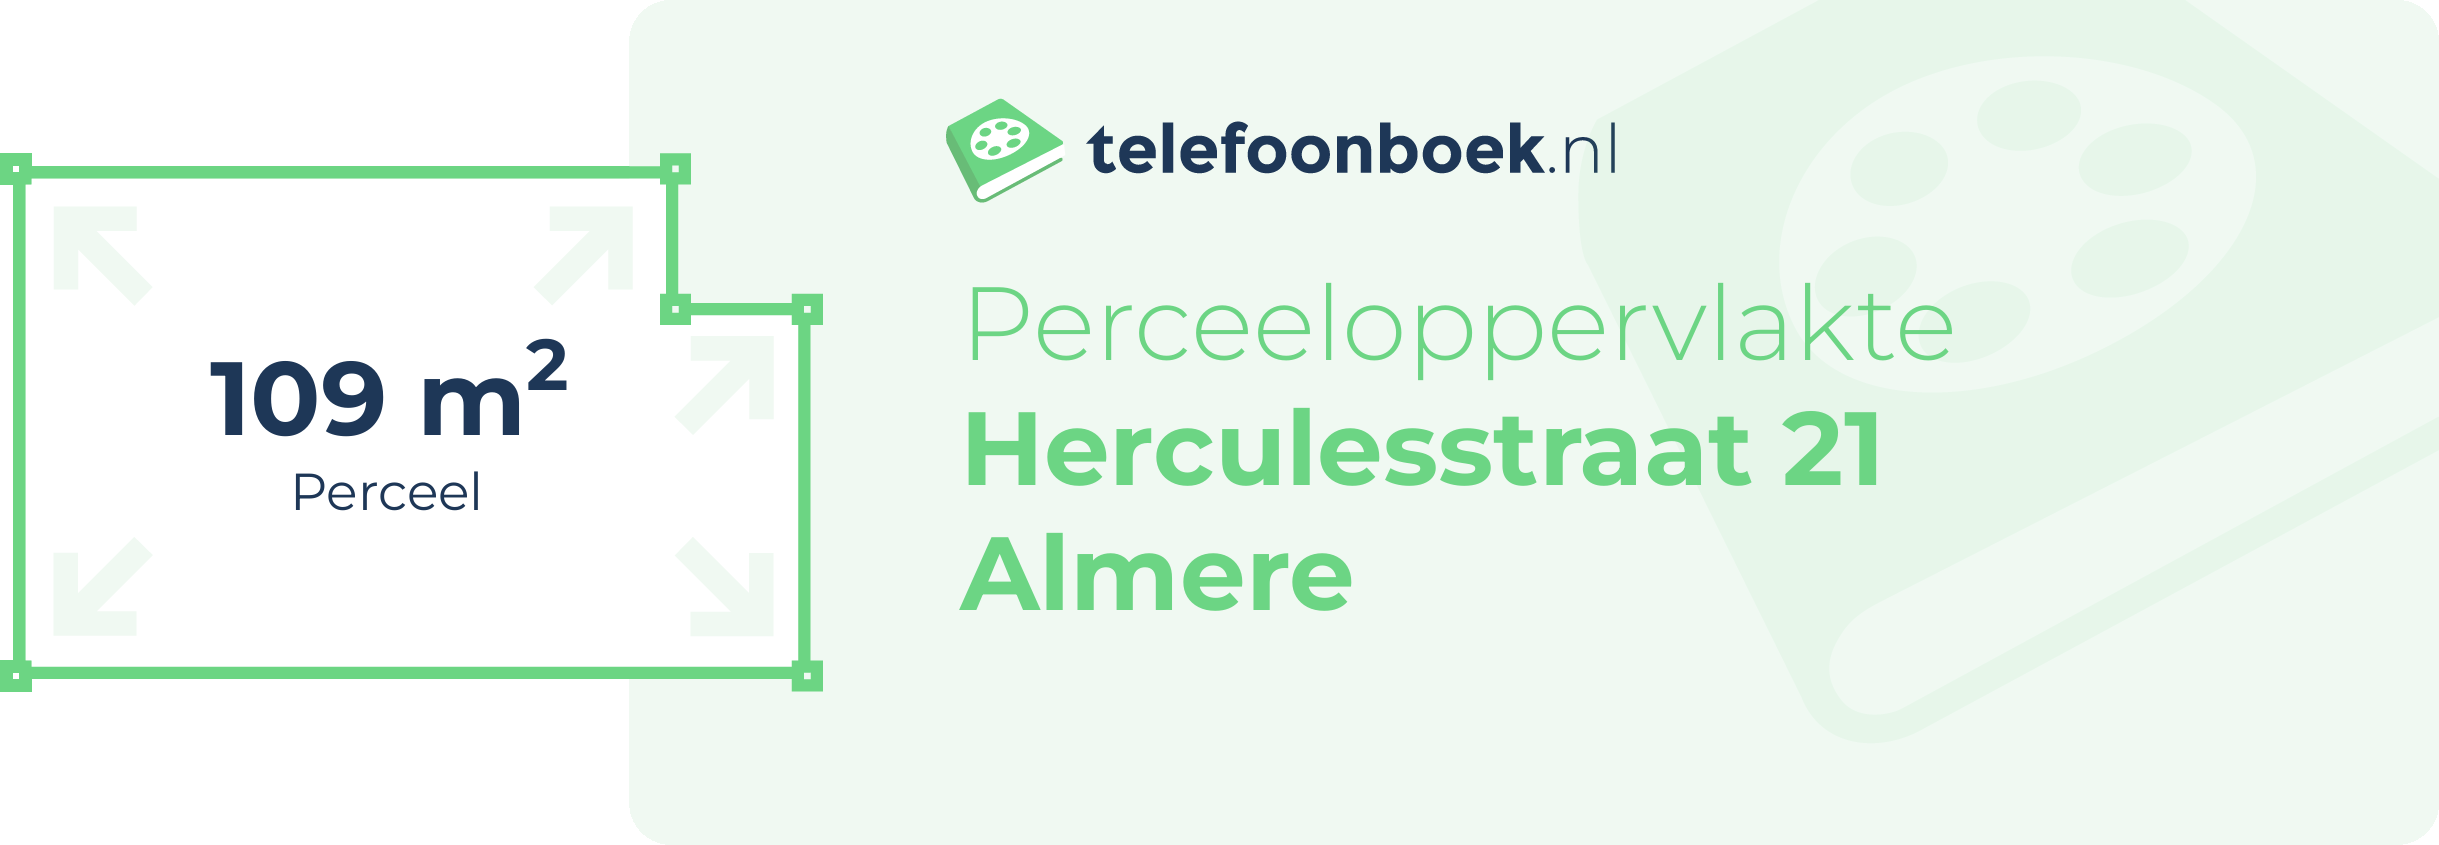 Perceeloppervlakte Herculesstraat 21 Almere